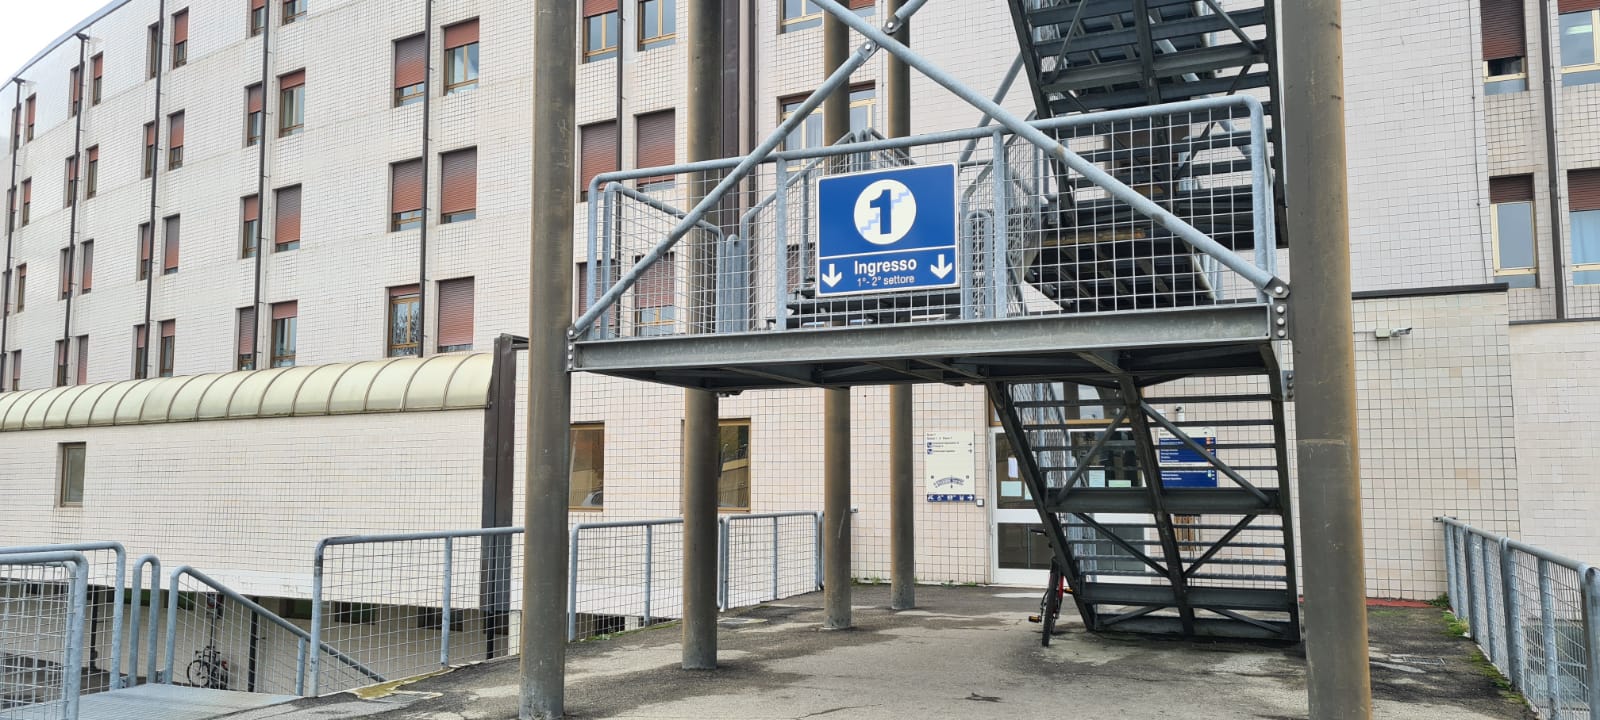 Nuova mobilità nell’anello esterno dell’ospedale San Donato di Arezzo